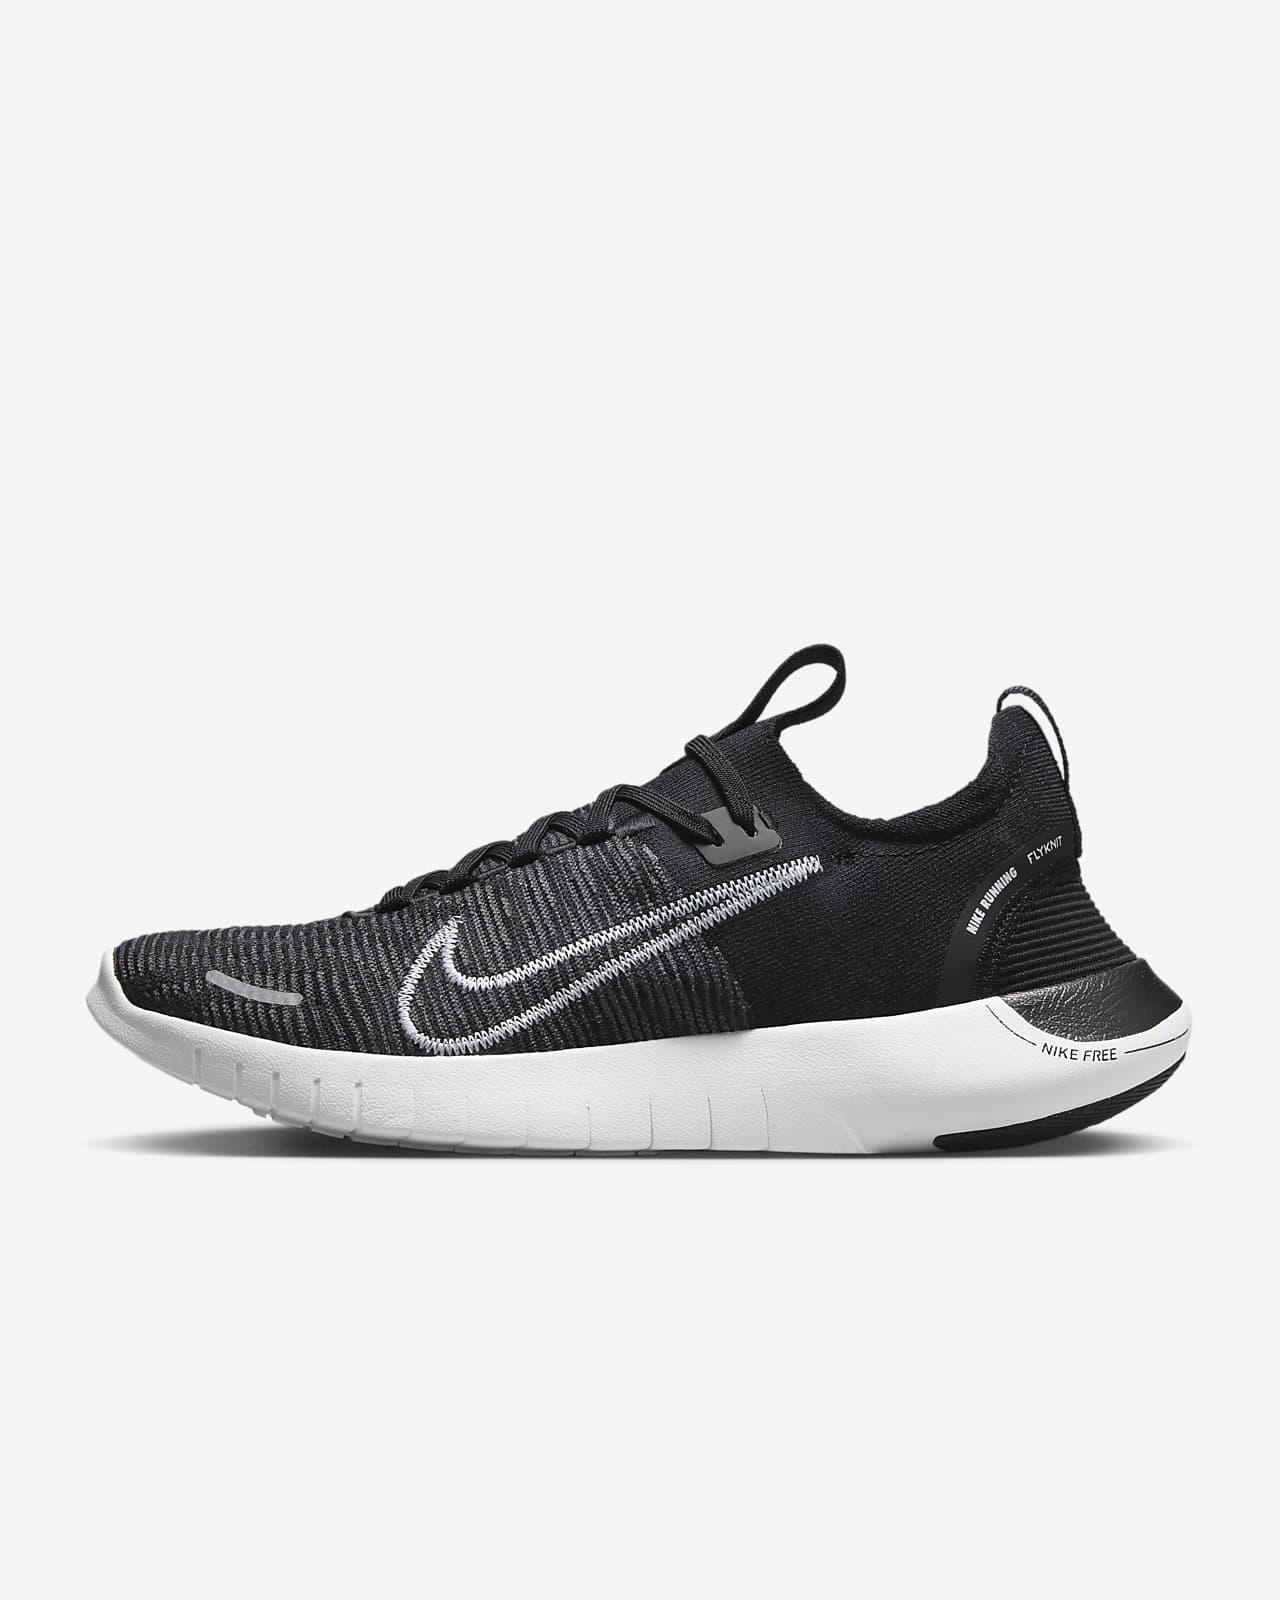 Ανδρικά παπούτσια για τρέξιμο σε δρόμο Nike Free RN NN